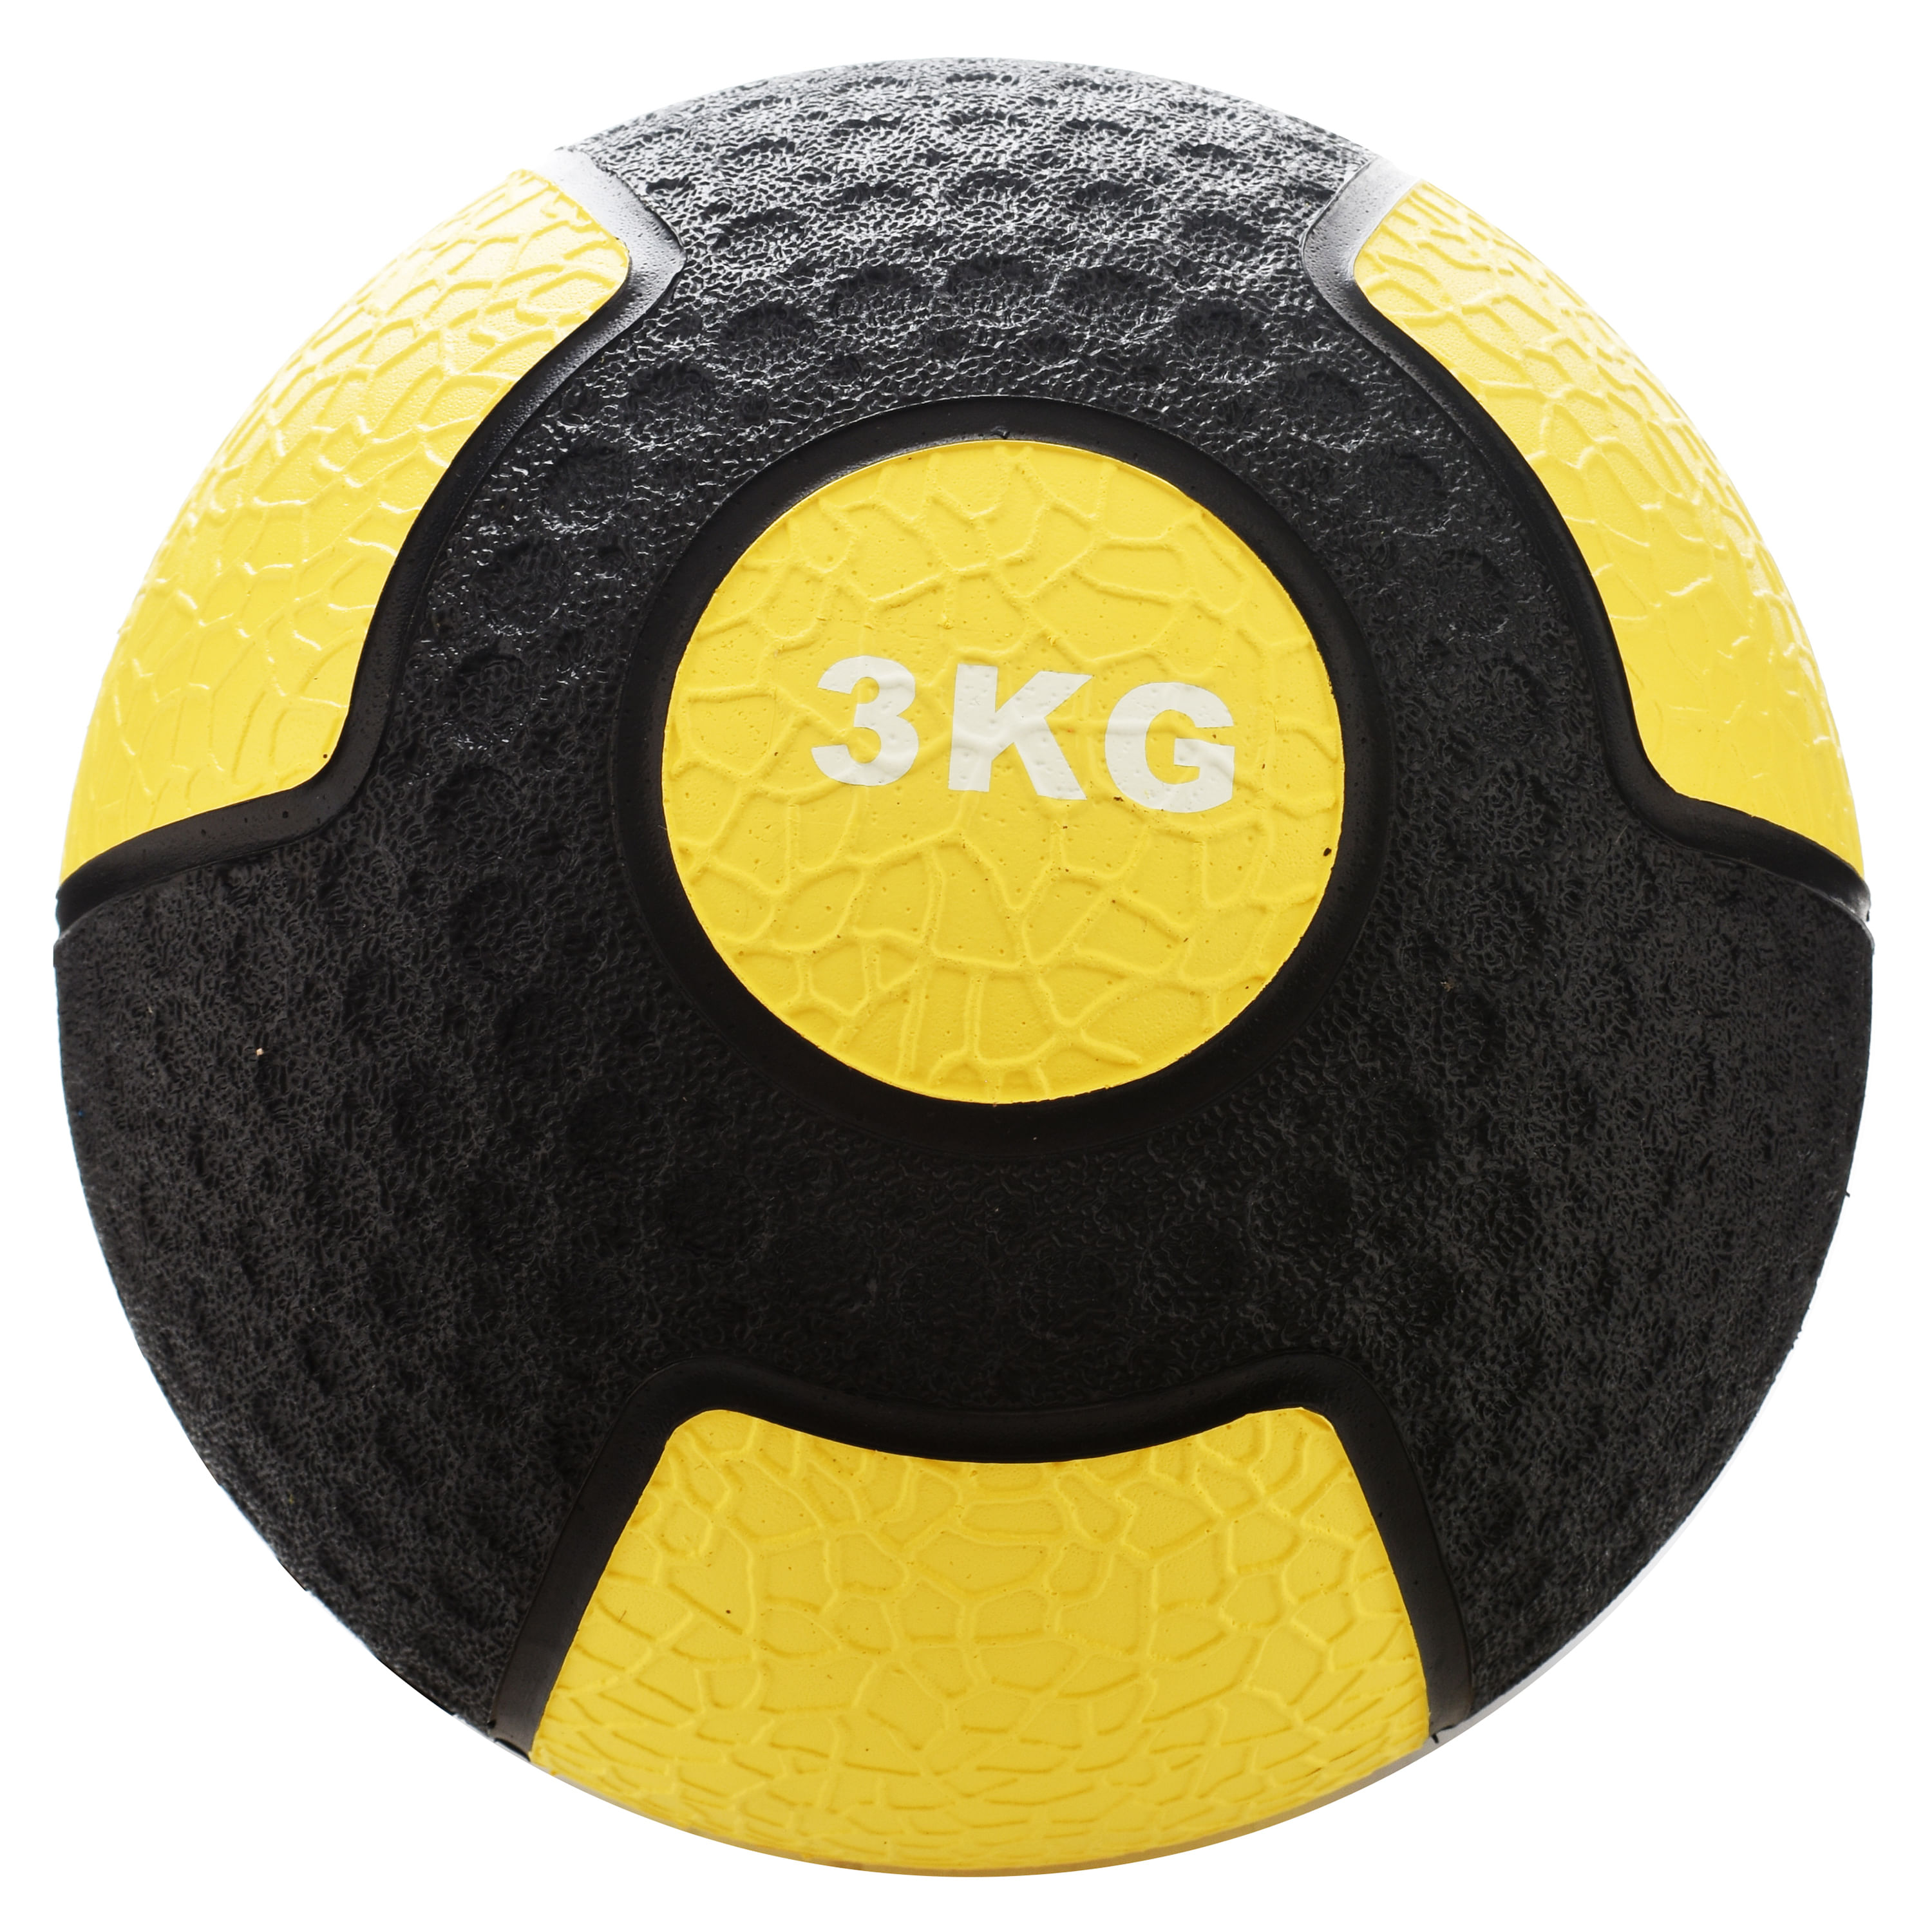 Comprar Balon Medicinal Athletic Works- 3Kg